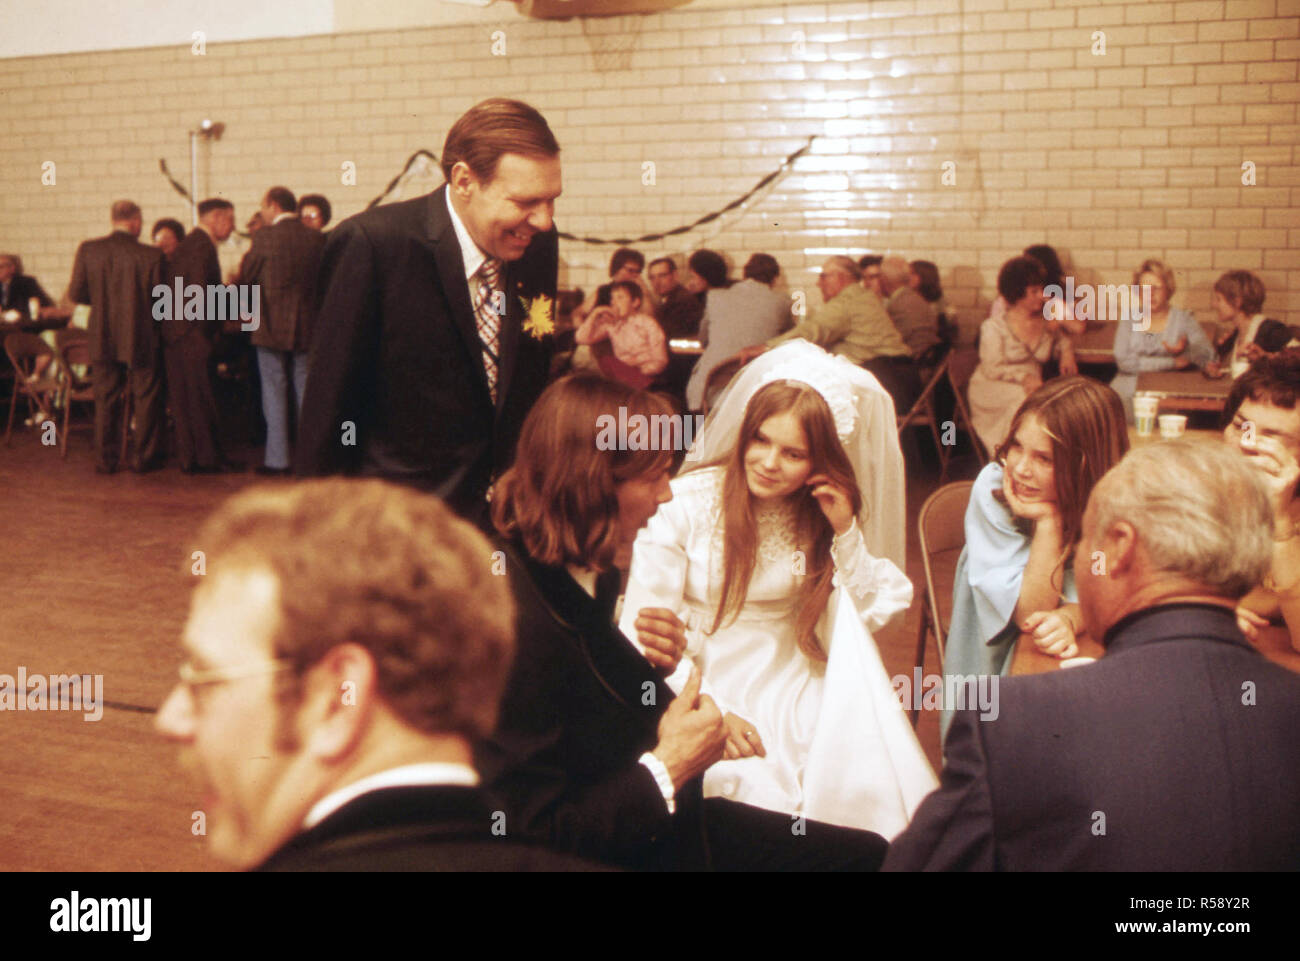 Danse de mariage qui a eu lieu dans le Gymnase Club Turner à New Ulm, Minnesota après la cérémonie à l'Église ca. 1975 Banque D'Images